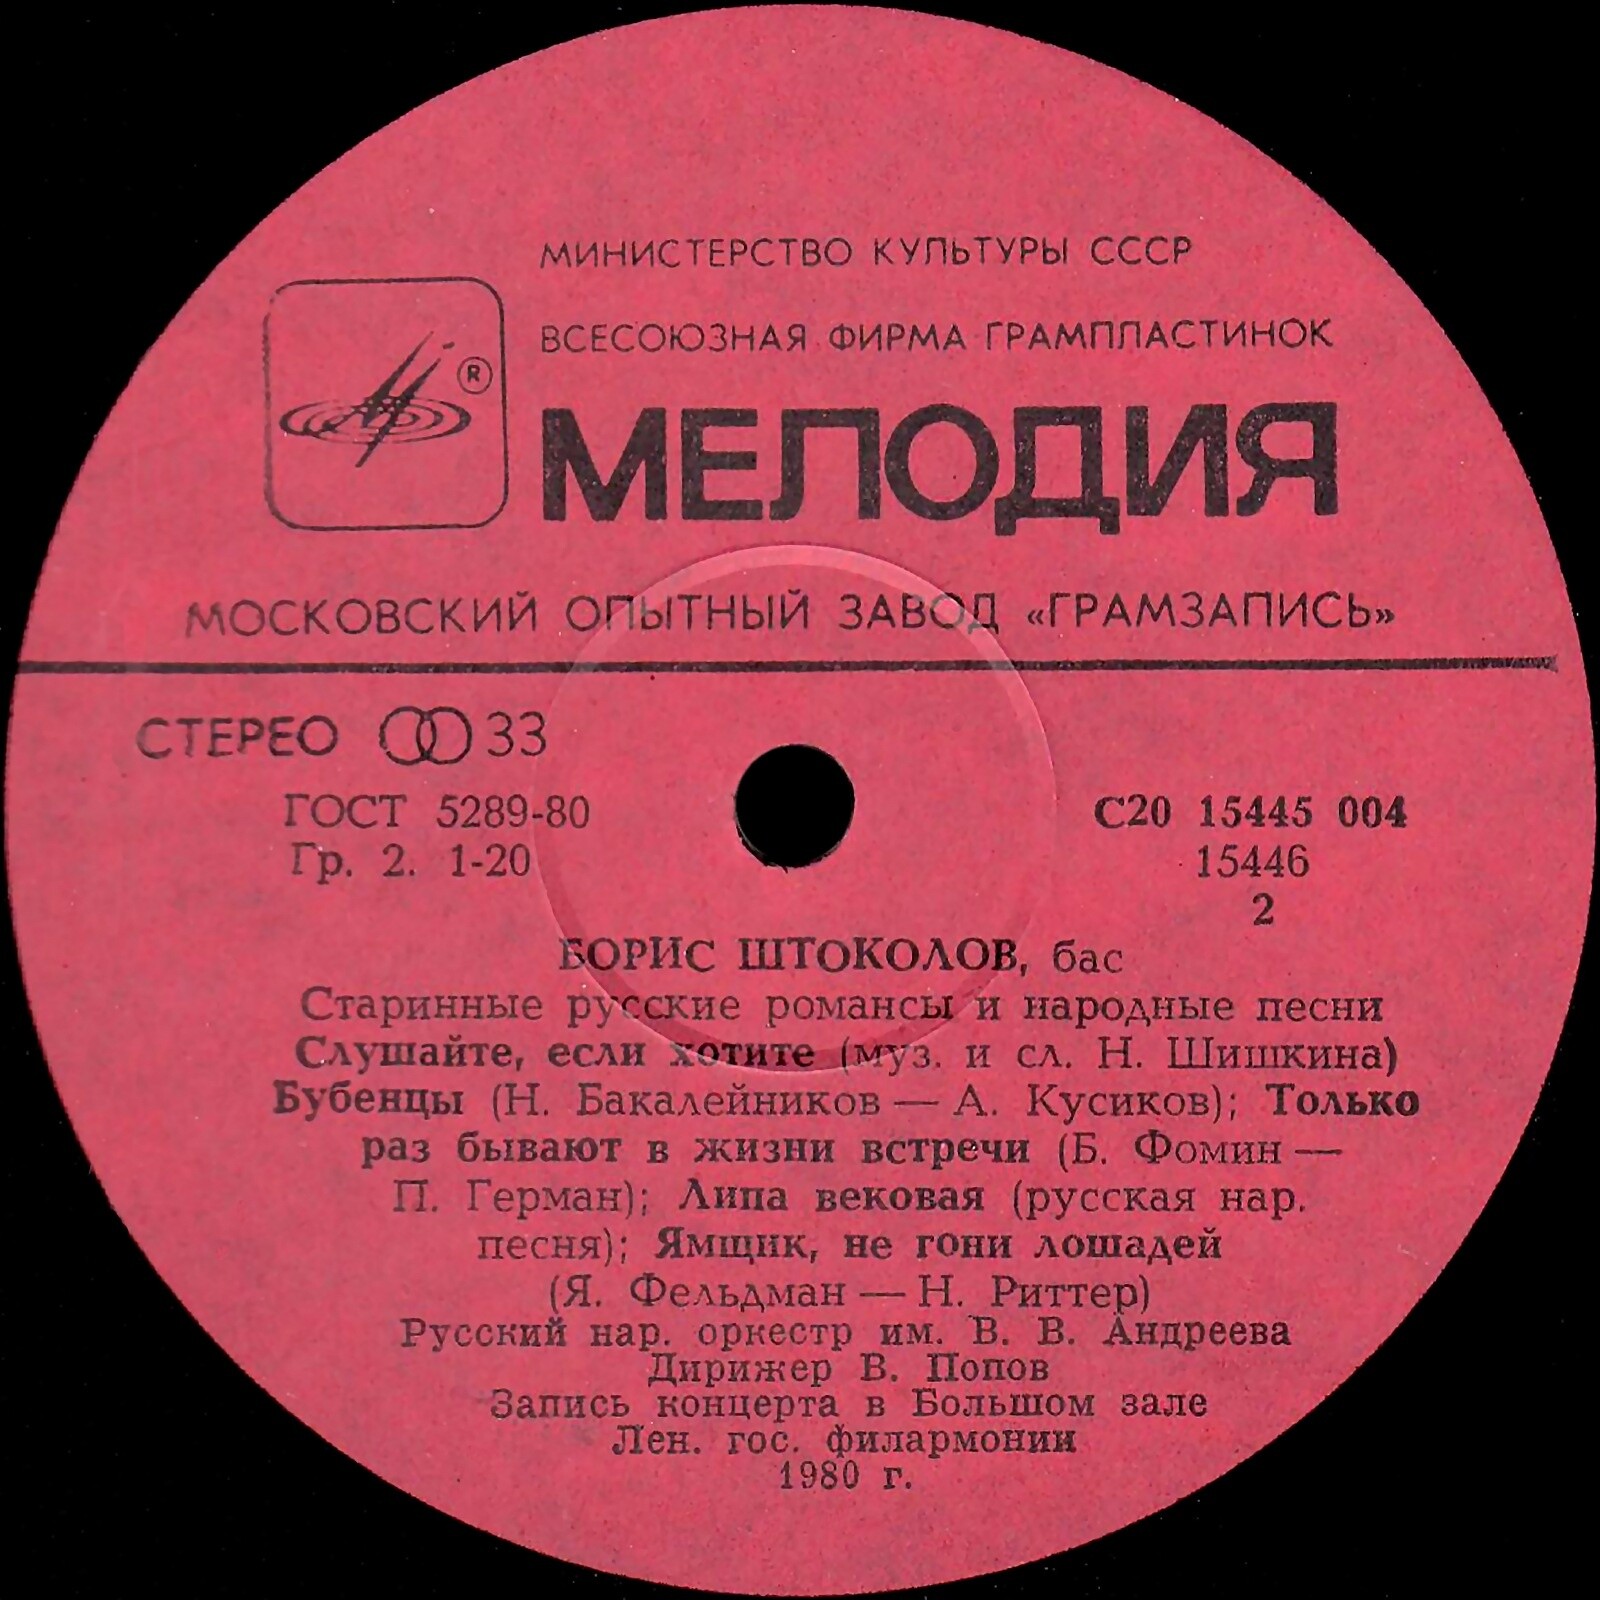 Борис Штоколов (бас) - Старинные русские романсы и народные песни